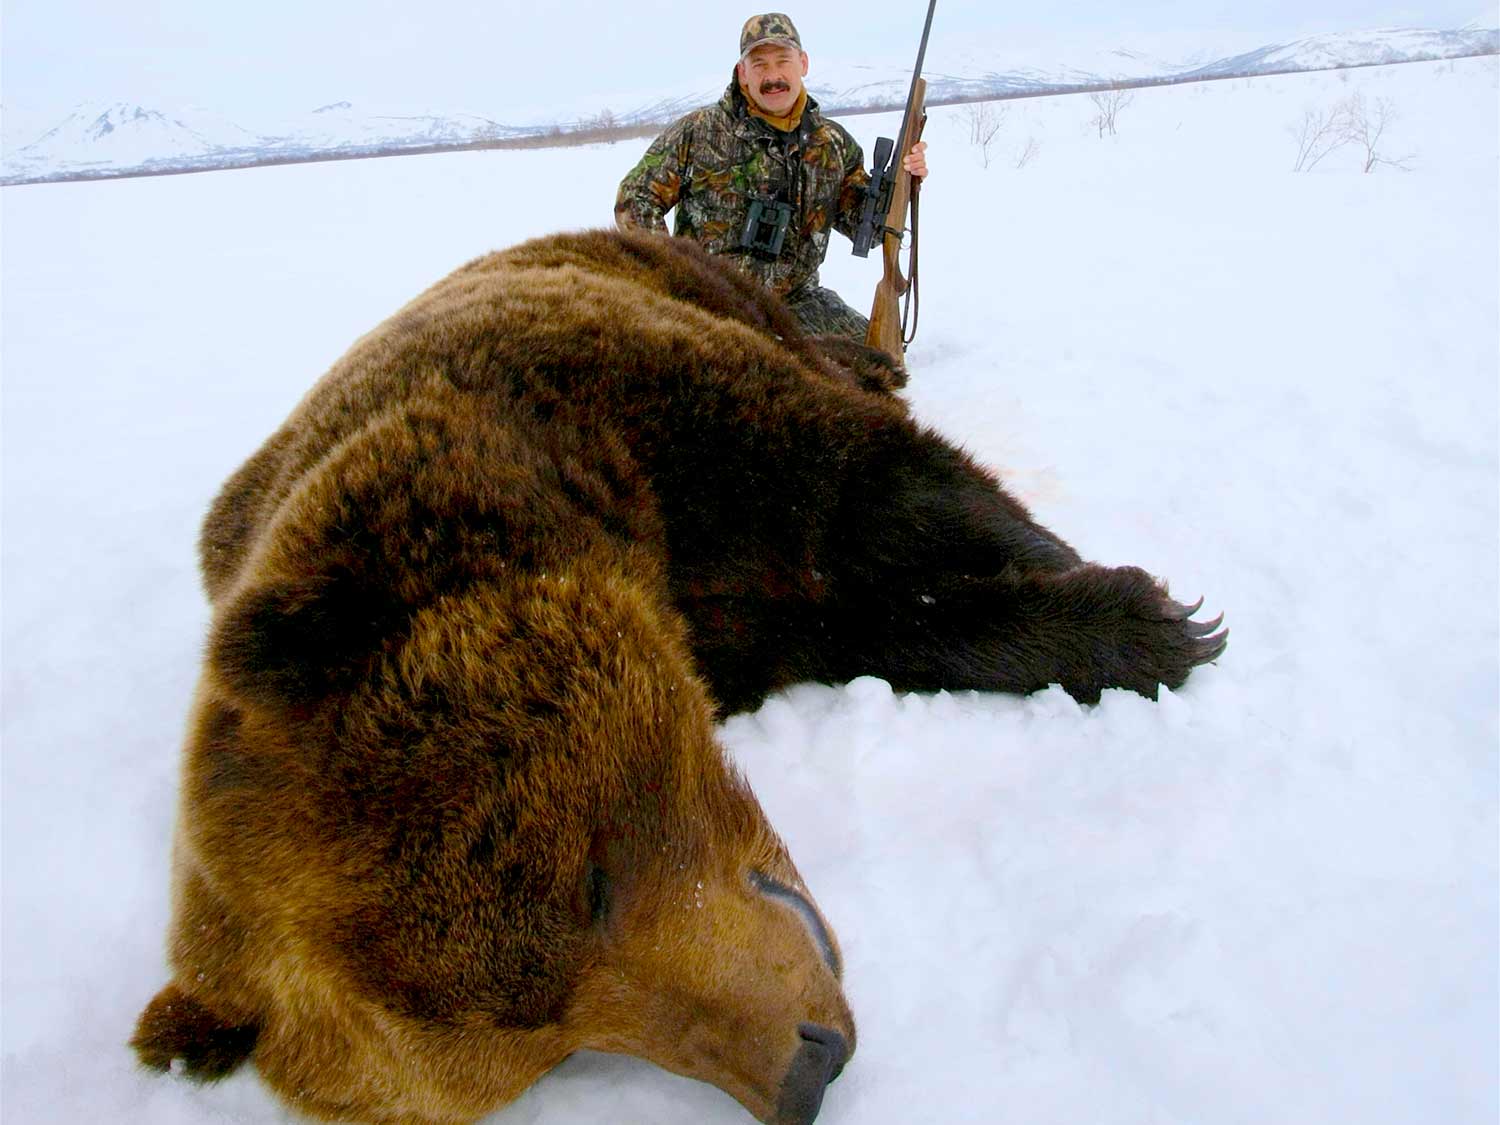 hunter kneeling behind brown bear in the snow